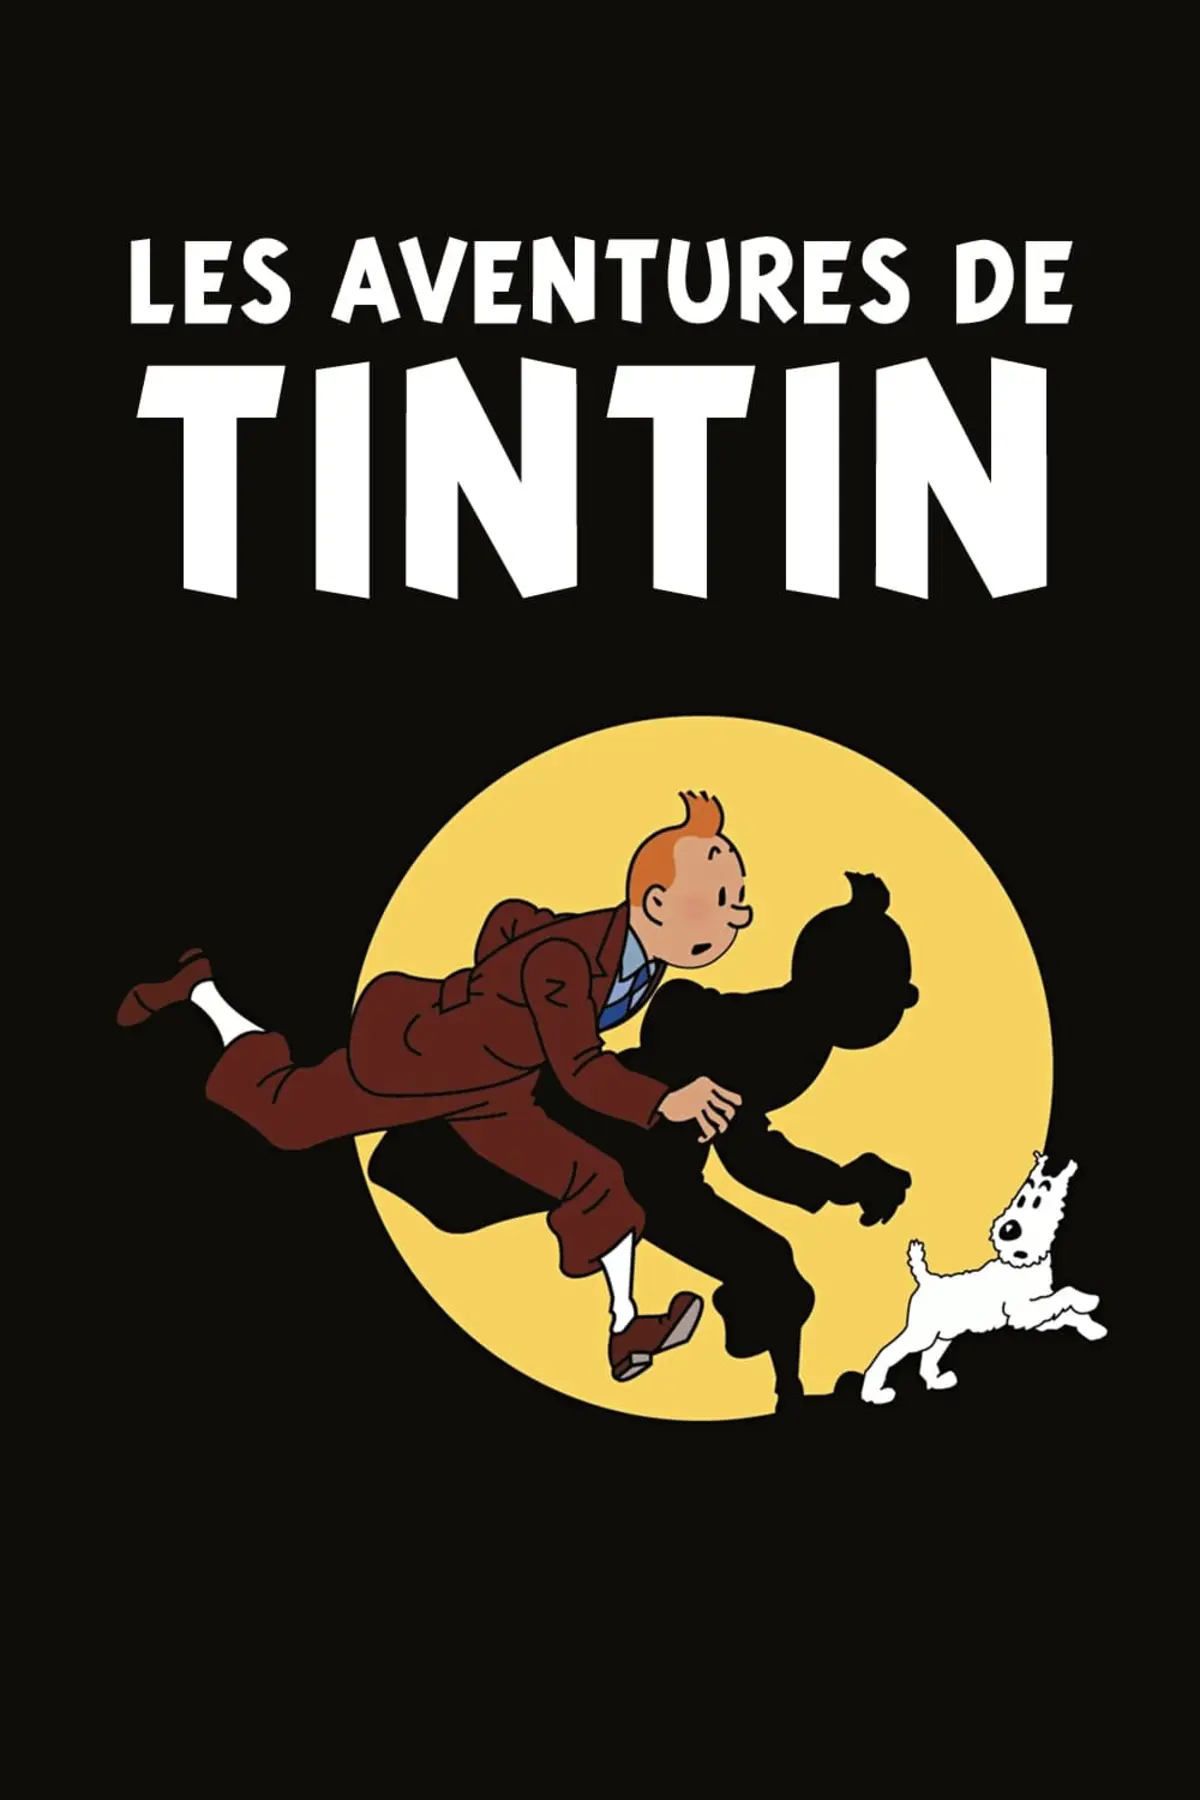 Les aventures de Tintin S02E02 L'Oreille cassée (1)